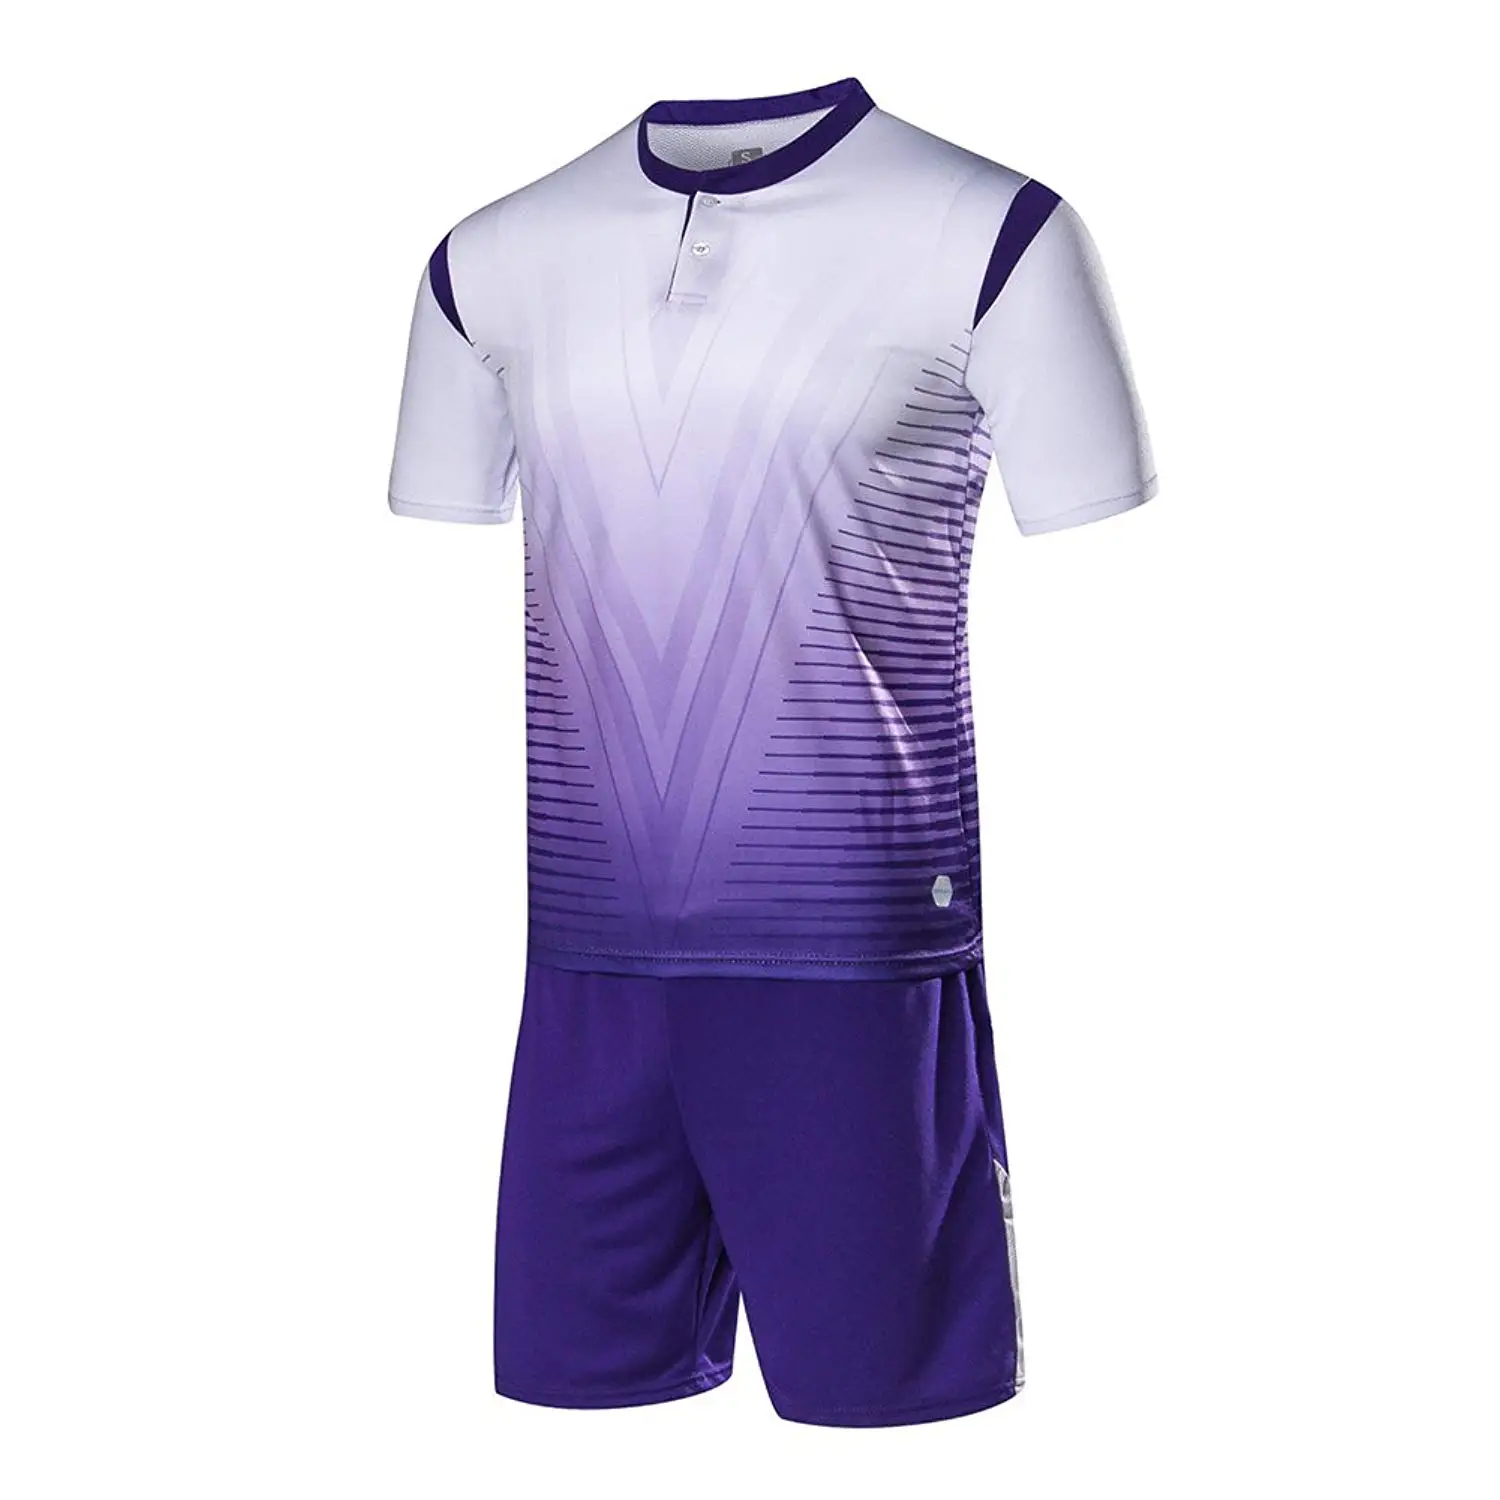 Cheap Football Wear Set, find Football Wear Set deals on line at ...